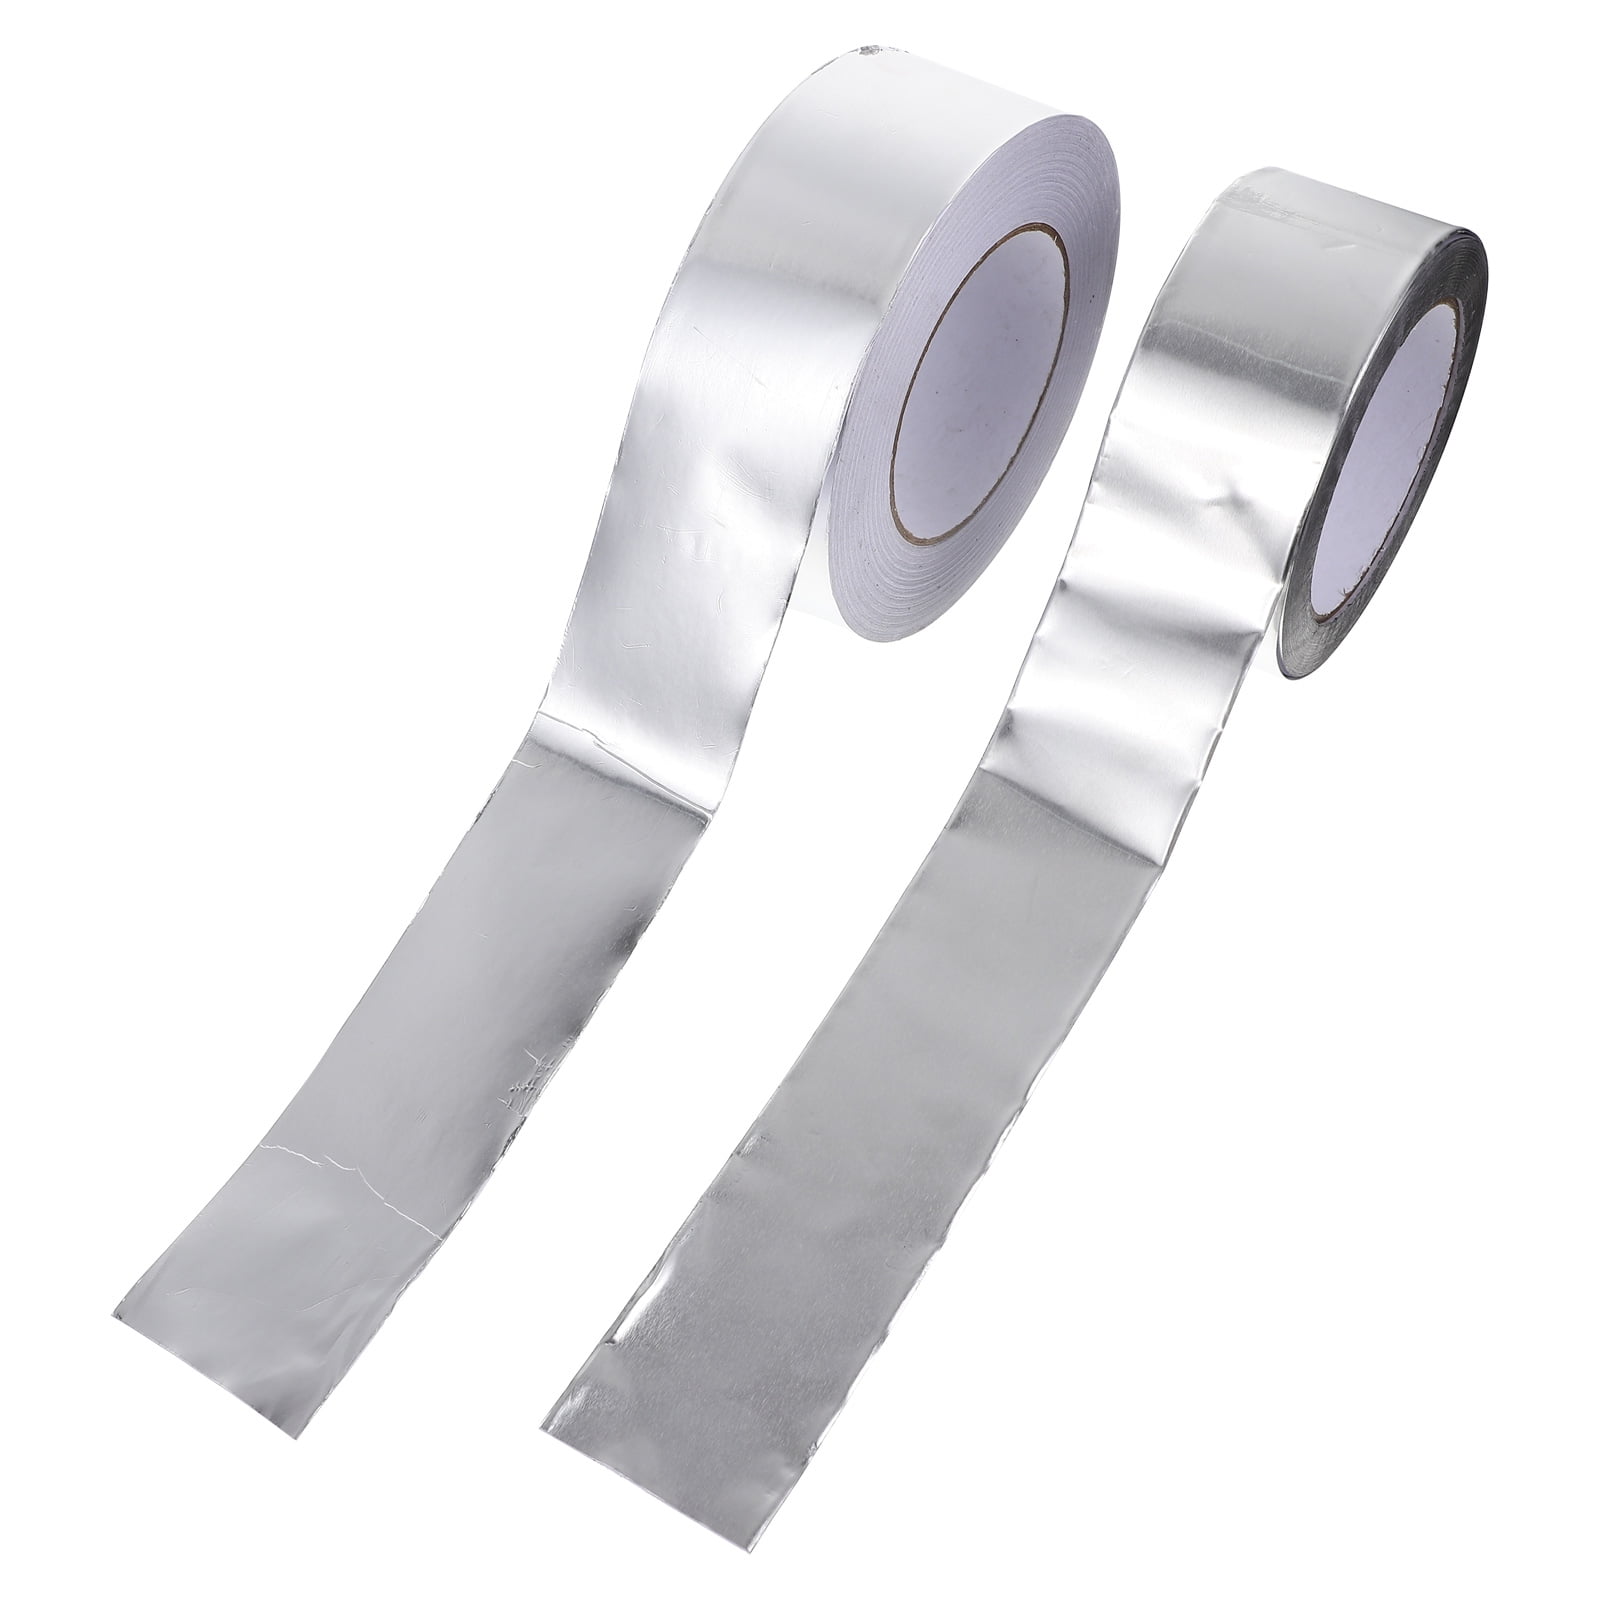 2 Rolls Flame Retardant Tape Aluminum Foil Tape Waterproof Sealing Tape ...